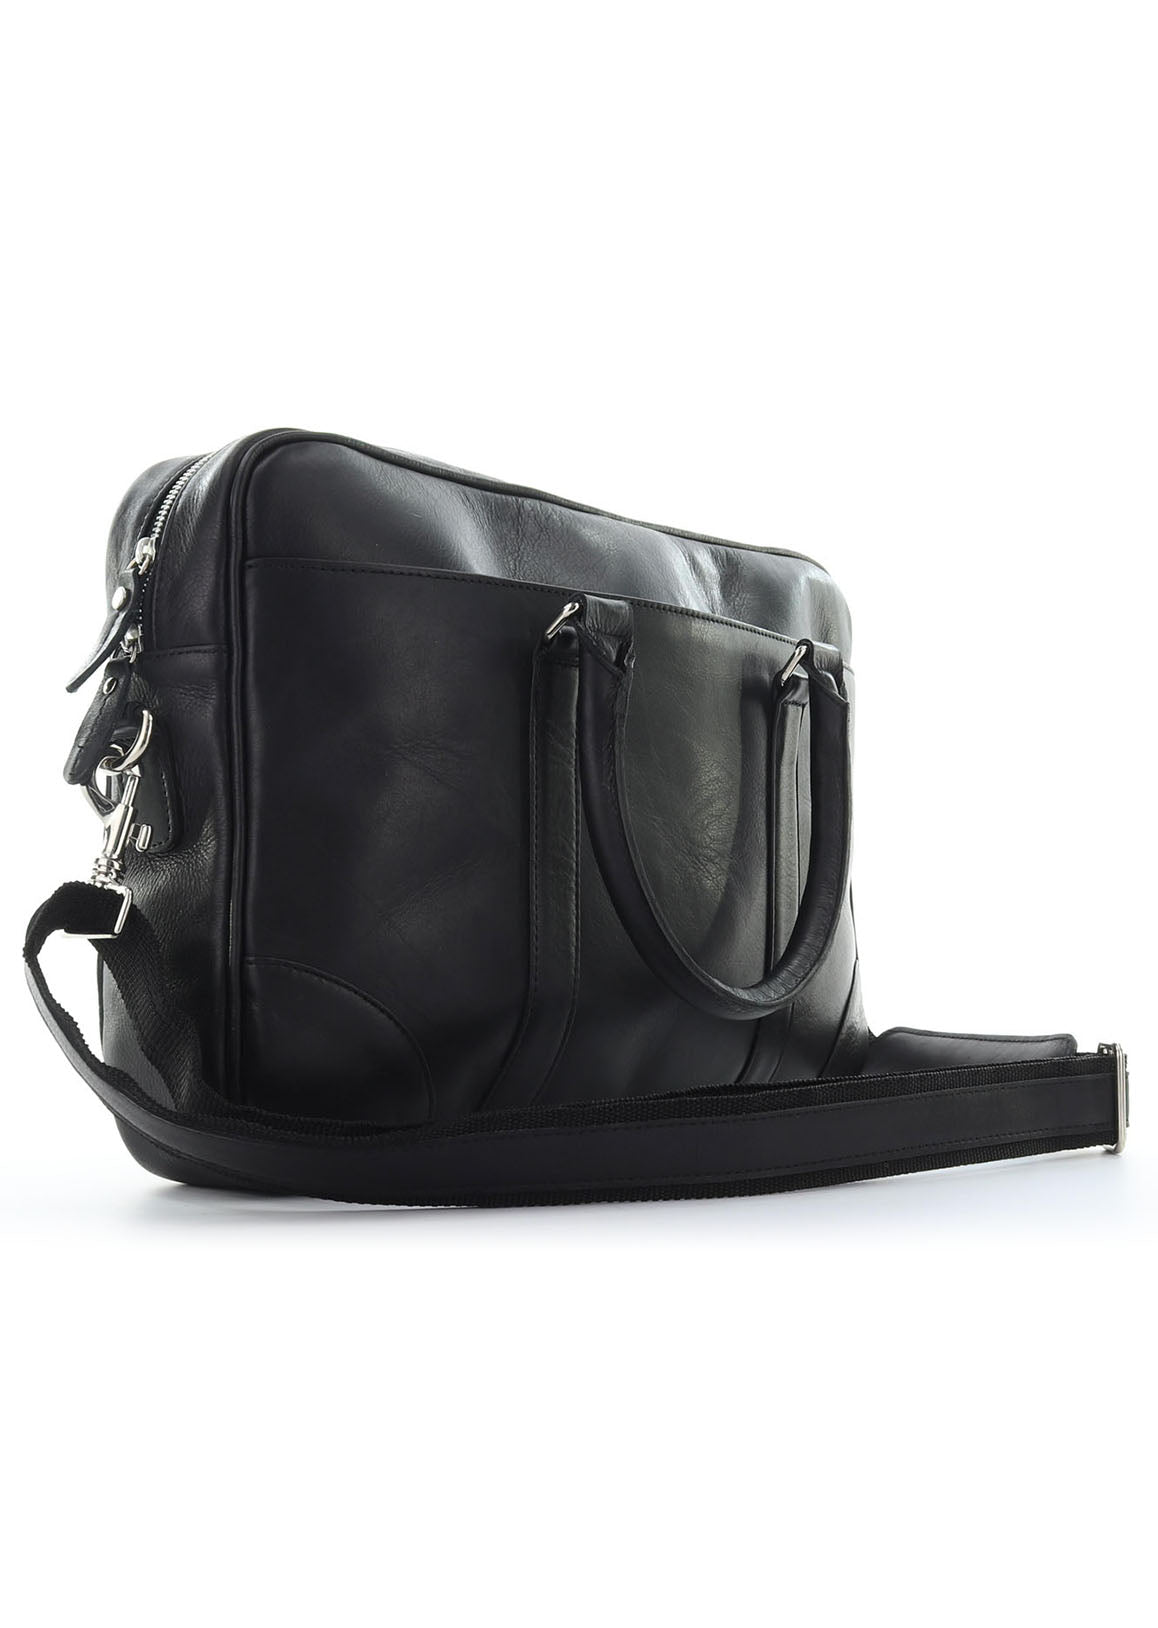 Black Hayden - messenger bag - leather bag - laptop bag - front view